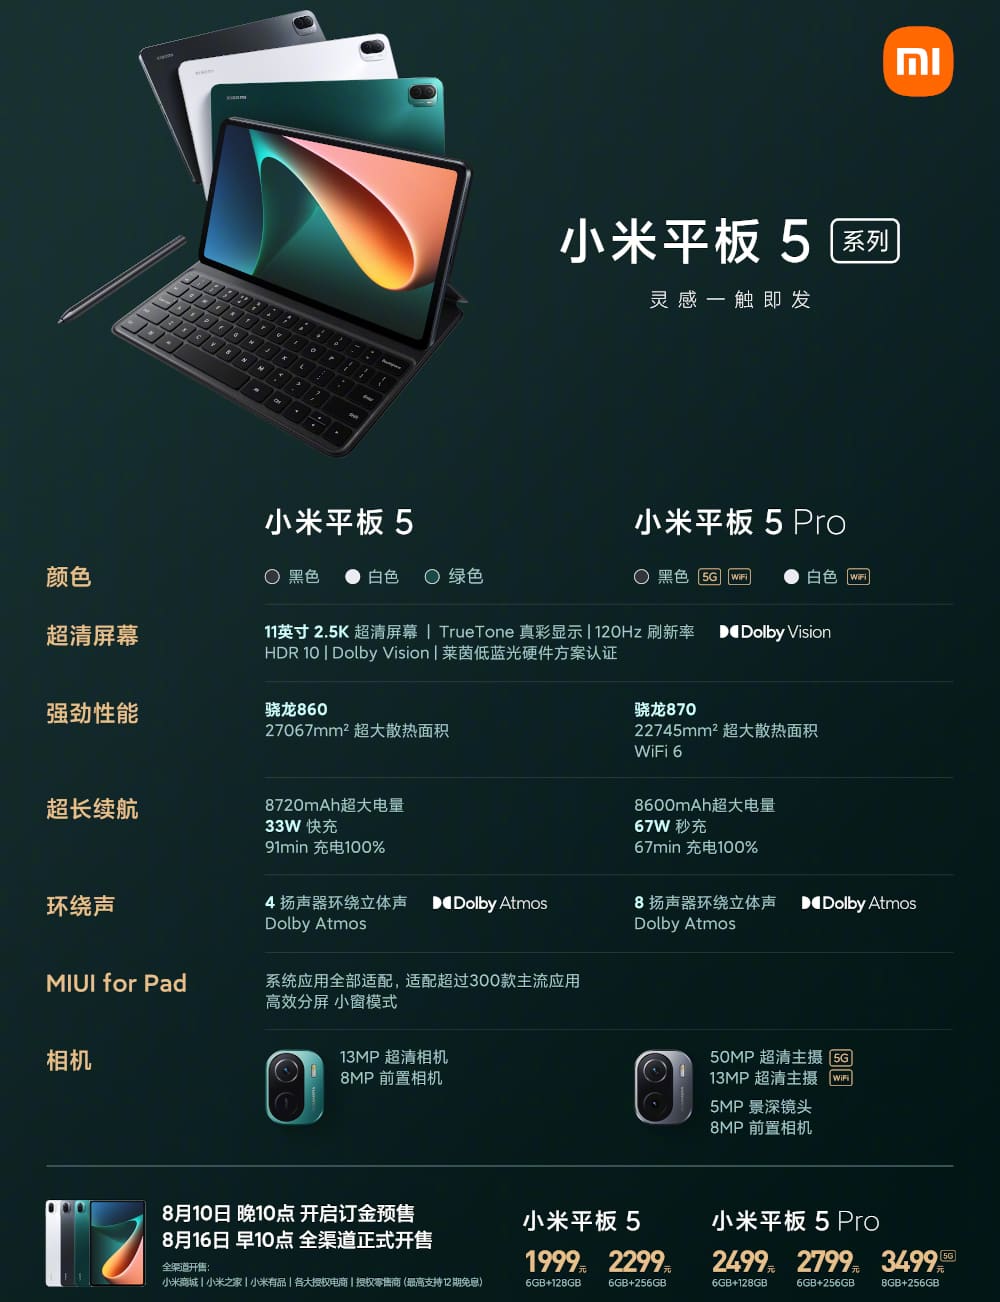 Xiaomi Mi Pad 5 Pro 発表、Snapdragon870・5G対応11インチタブレット | phablet.jp (ファブレット.jp)